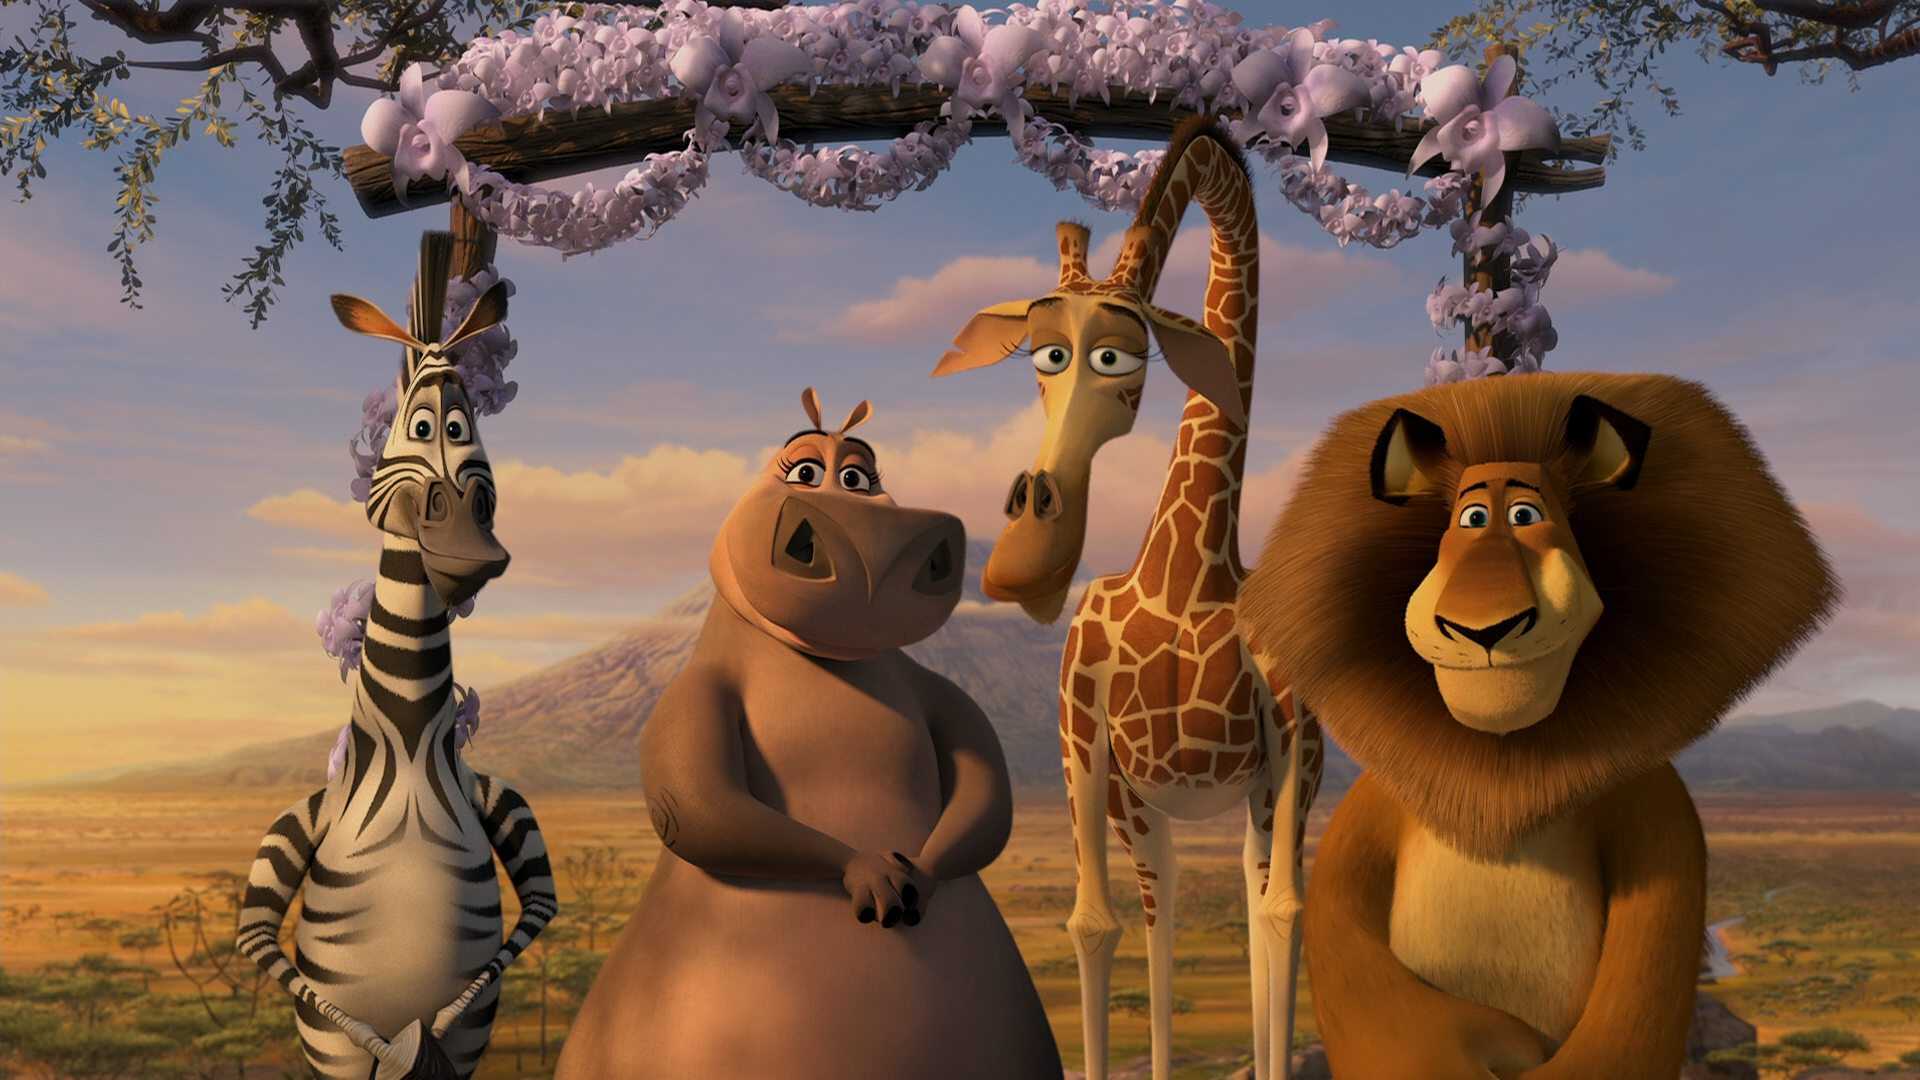 Мадагаскар 5, дата выхода которого пока уточняется – это продолжение веселого и очень красочного мультфильма с искрометным юмором, который рассказывает о приключениях зебры, бегемотихи, жирафа и циркового льва Алекса Герои просто не могут жить спокойной ж